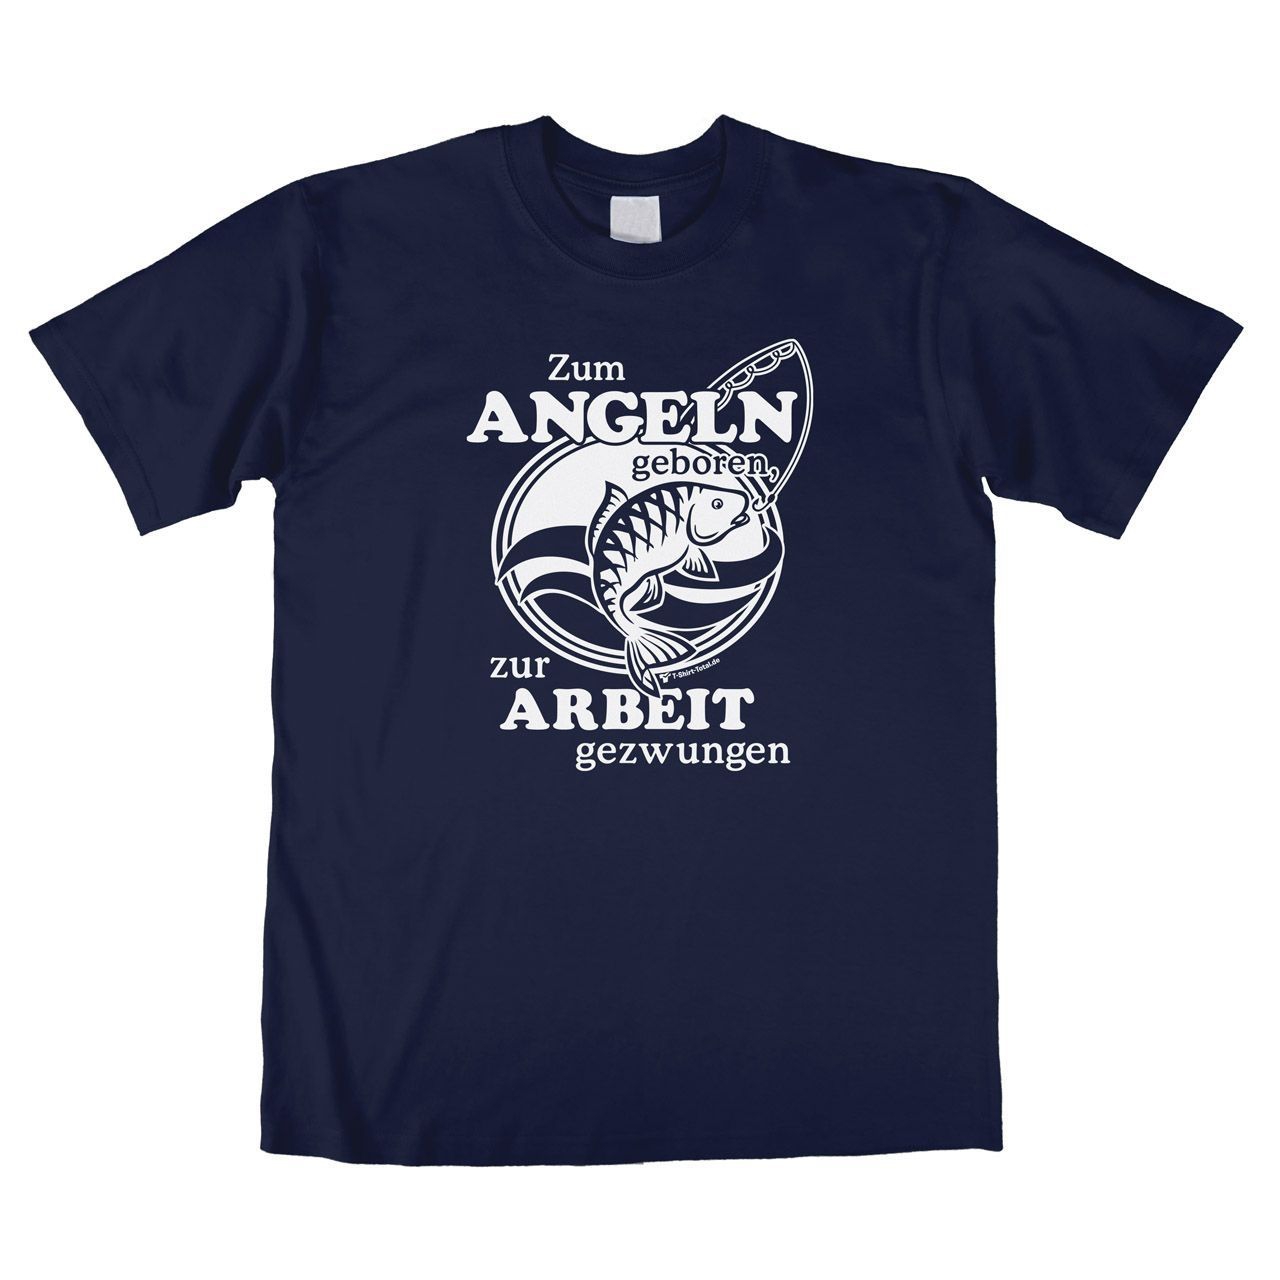 Zum Angeln geboren Unisex T-Shirt navy Large